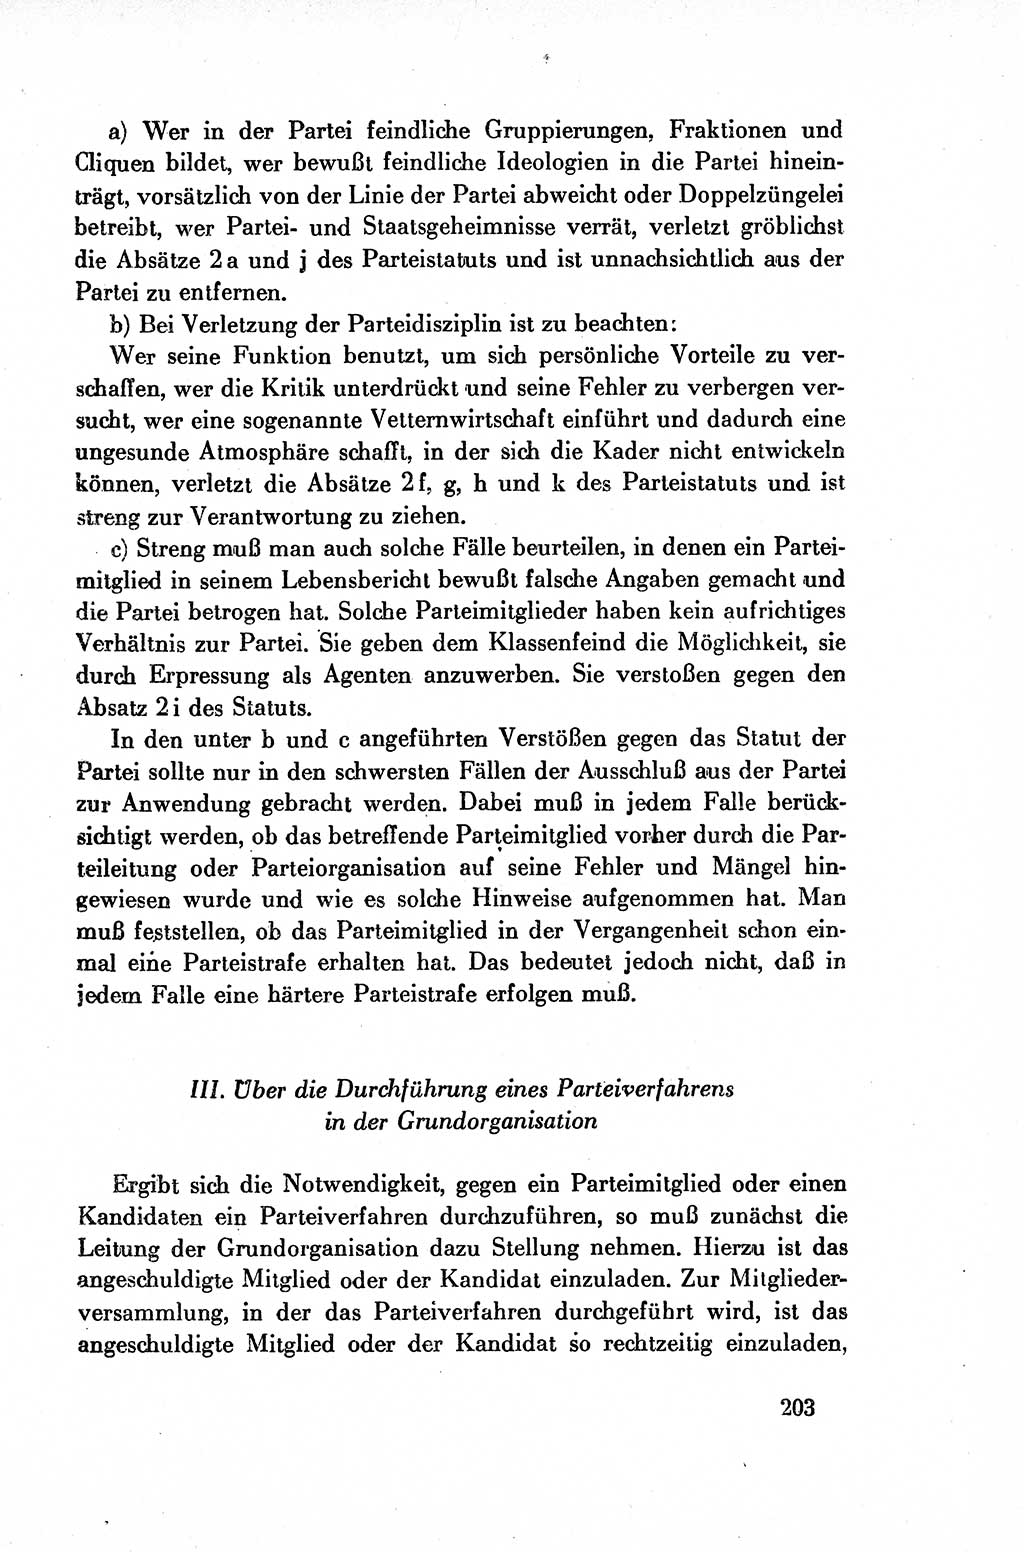 Dokumente der Sozialistischen Einheitspartei Deutschlands (SED) [Deutsche Demokratische Republik (DDR)] 1954-1955, Seite 203 (Dok. SED DDR 1954-1955, S. 203)